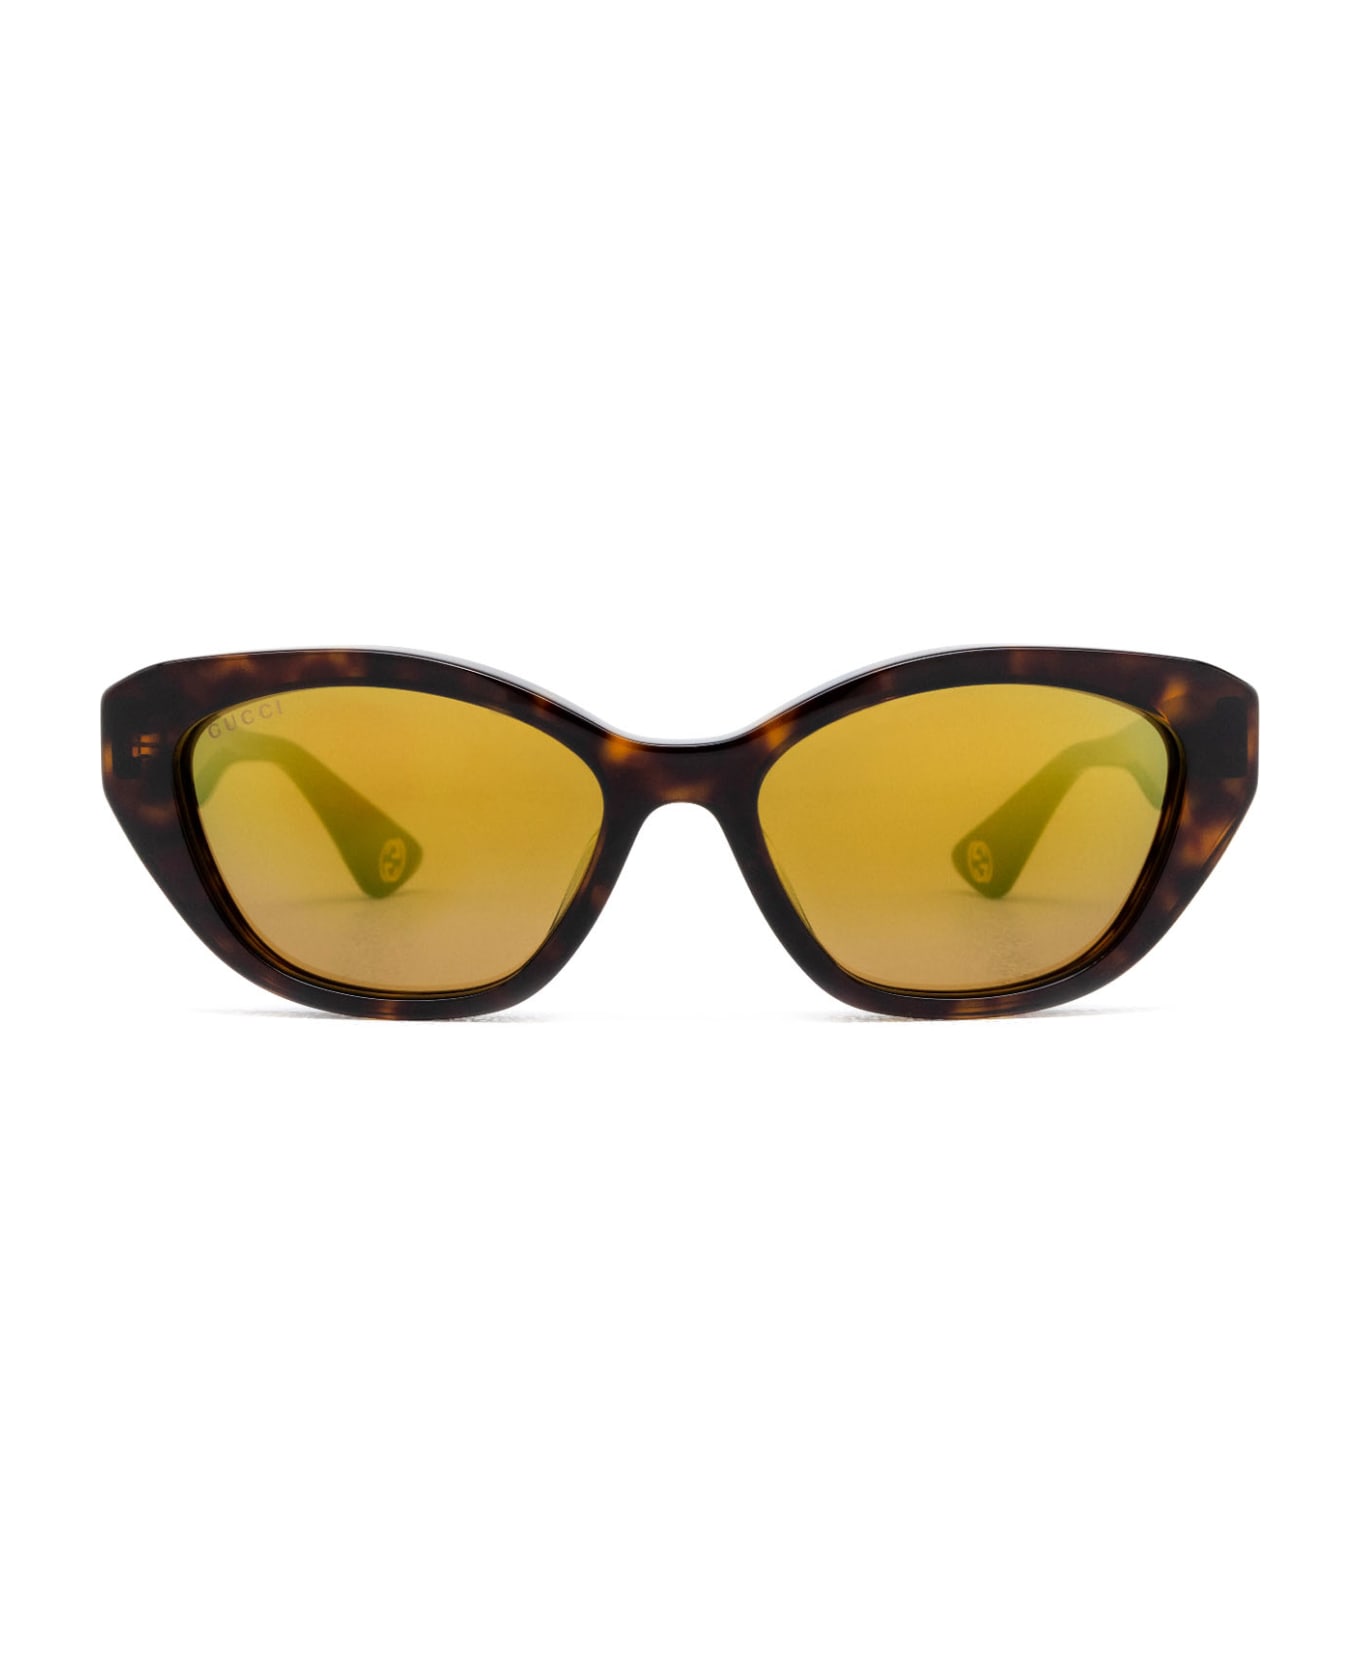 Gucci Eyewear Gg1638sa Havana Sunglasses - Havana